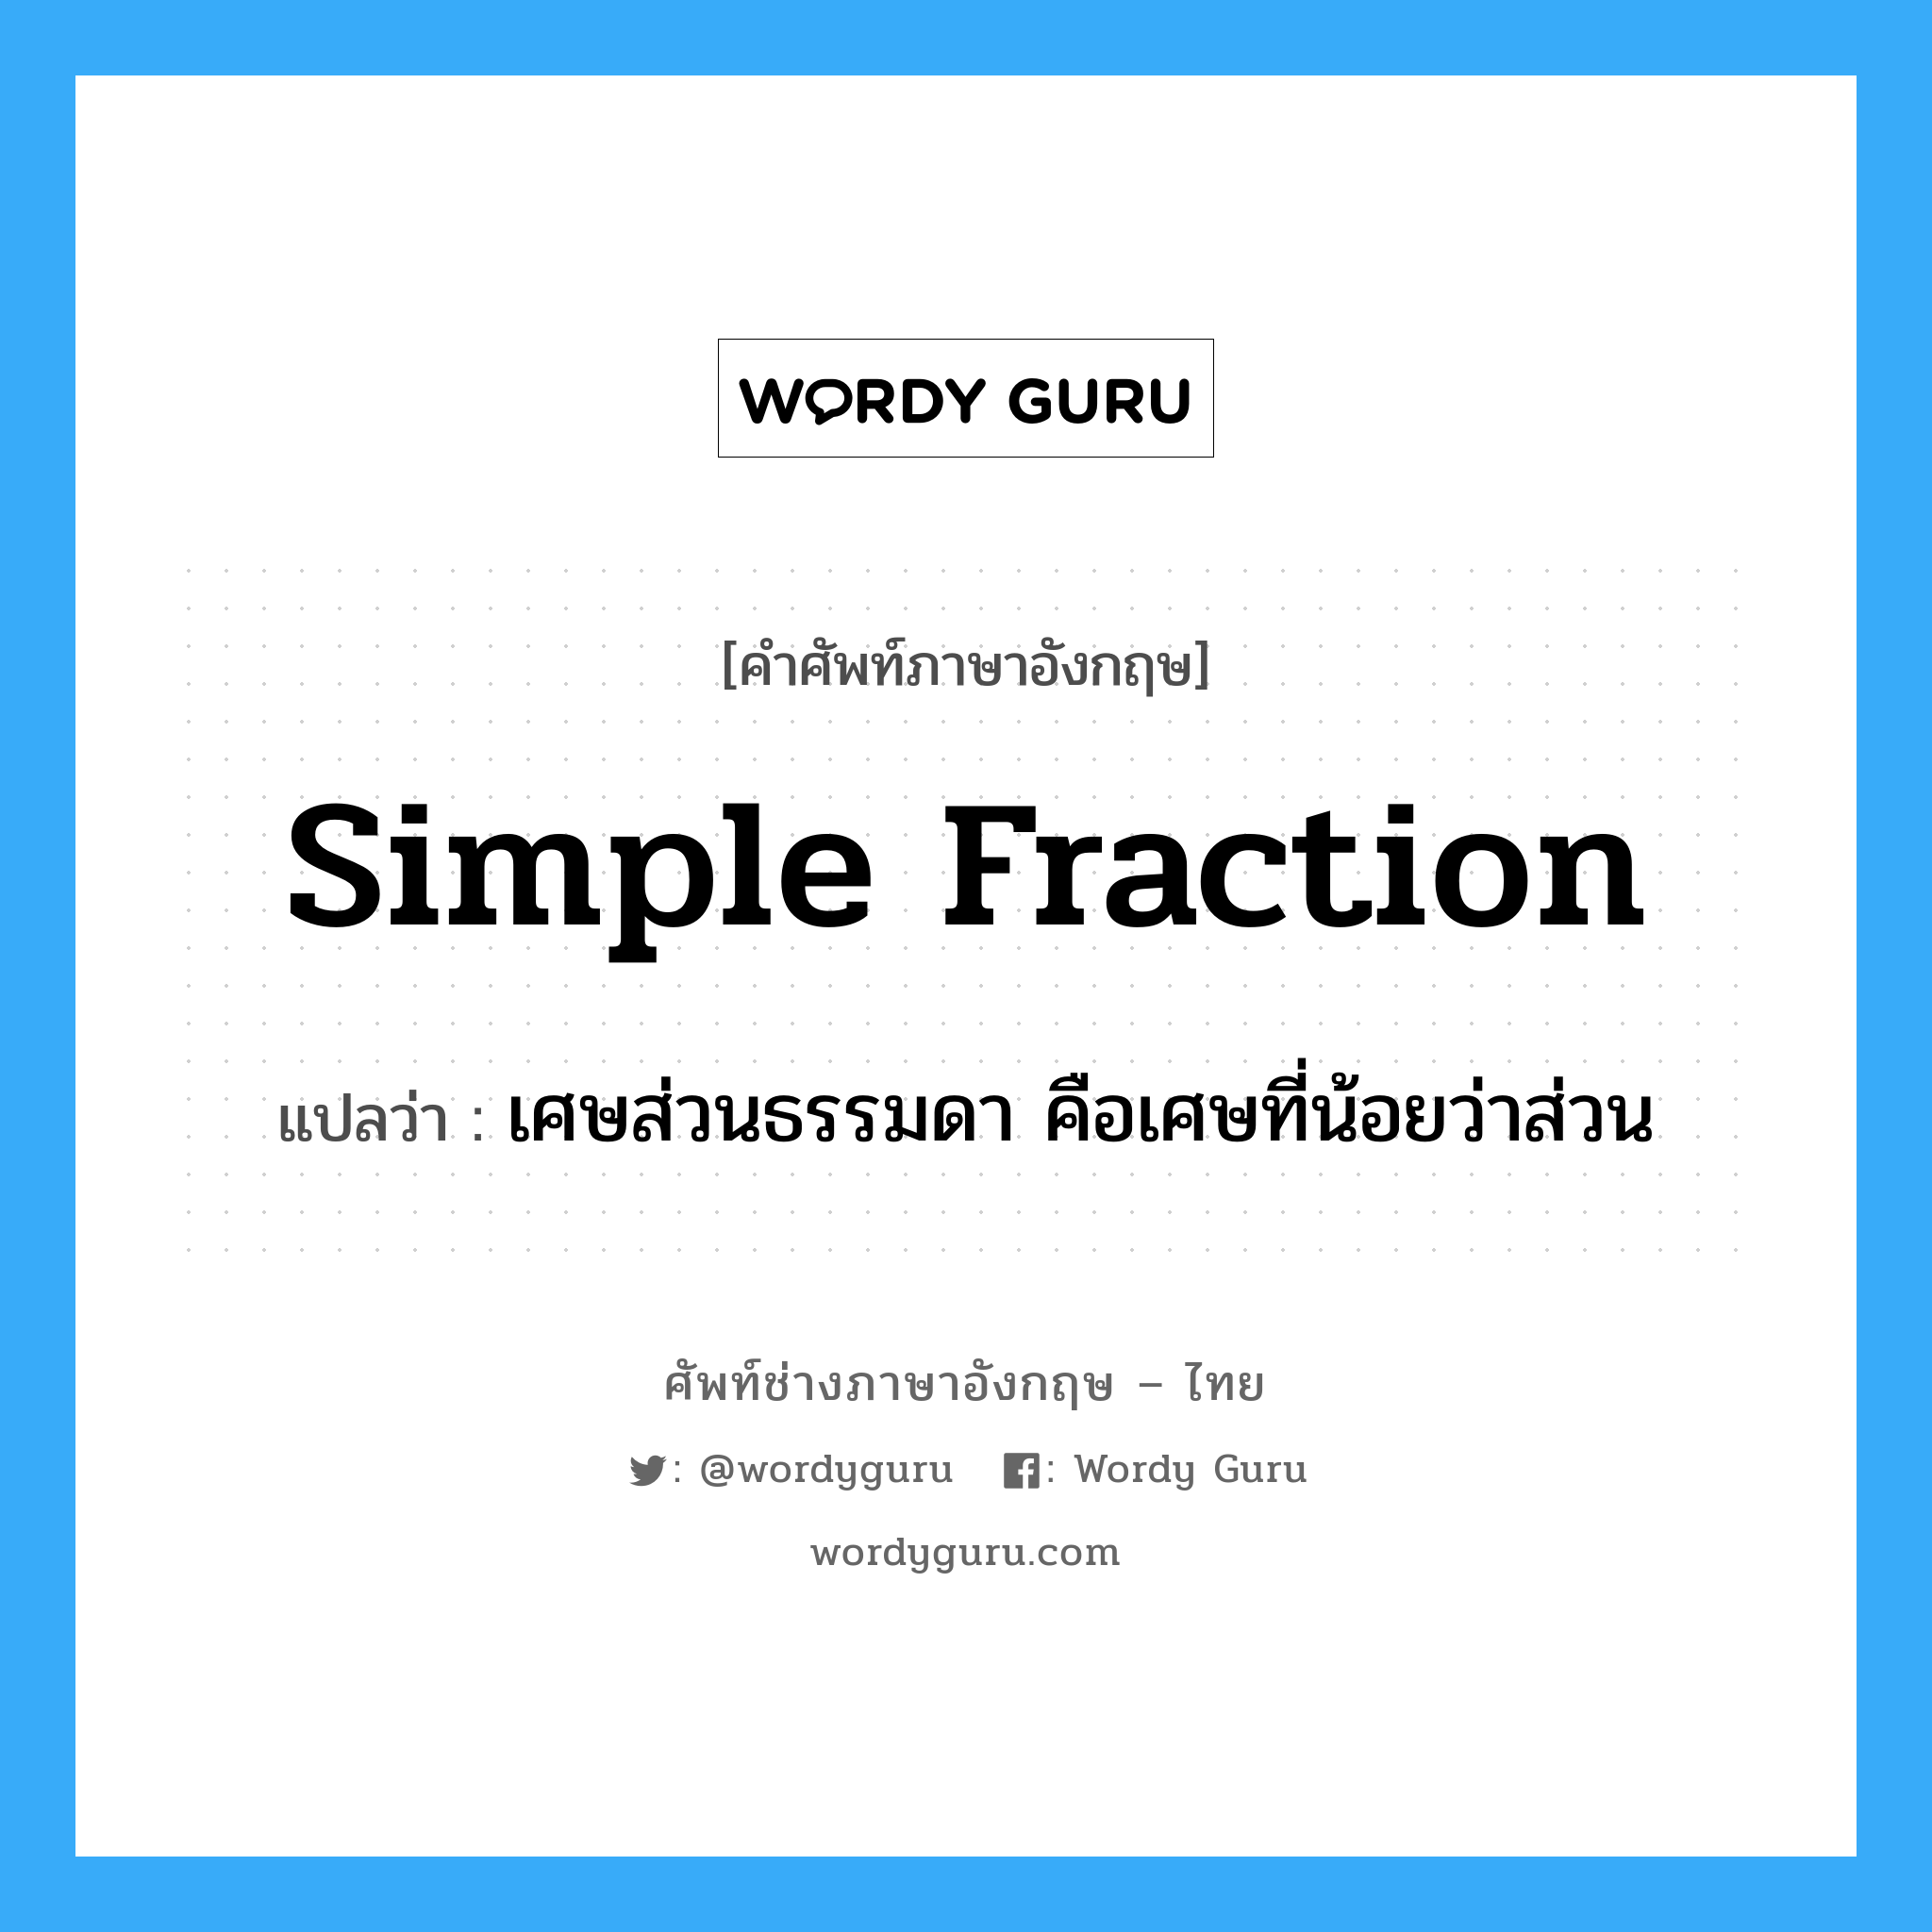 simple fraction แปลว่า?, คำศัพท์ช่างภาษาอังกฤษ - ไทย simple fraction คำศัพท์ภาษาอังกฤษ simple fraction แปลว่า เศษส่วนธรรมดา คือเศษที่น้อยว่าส่วน